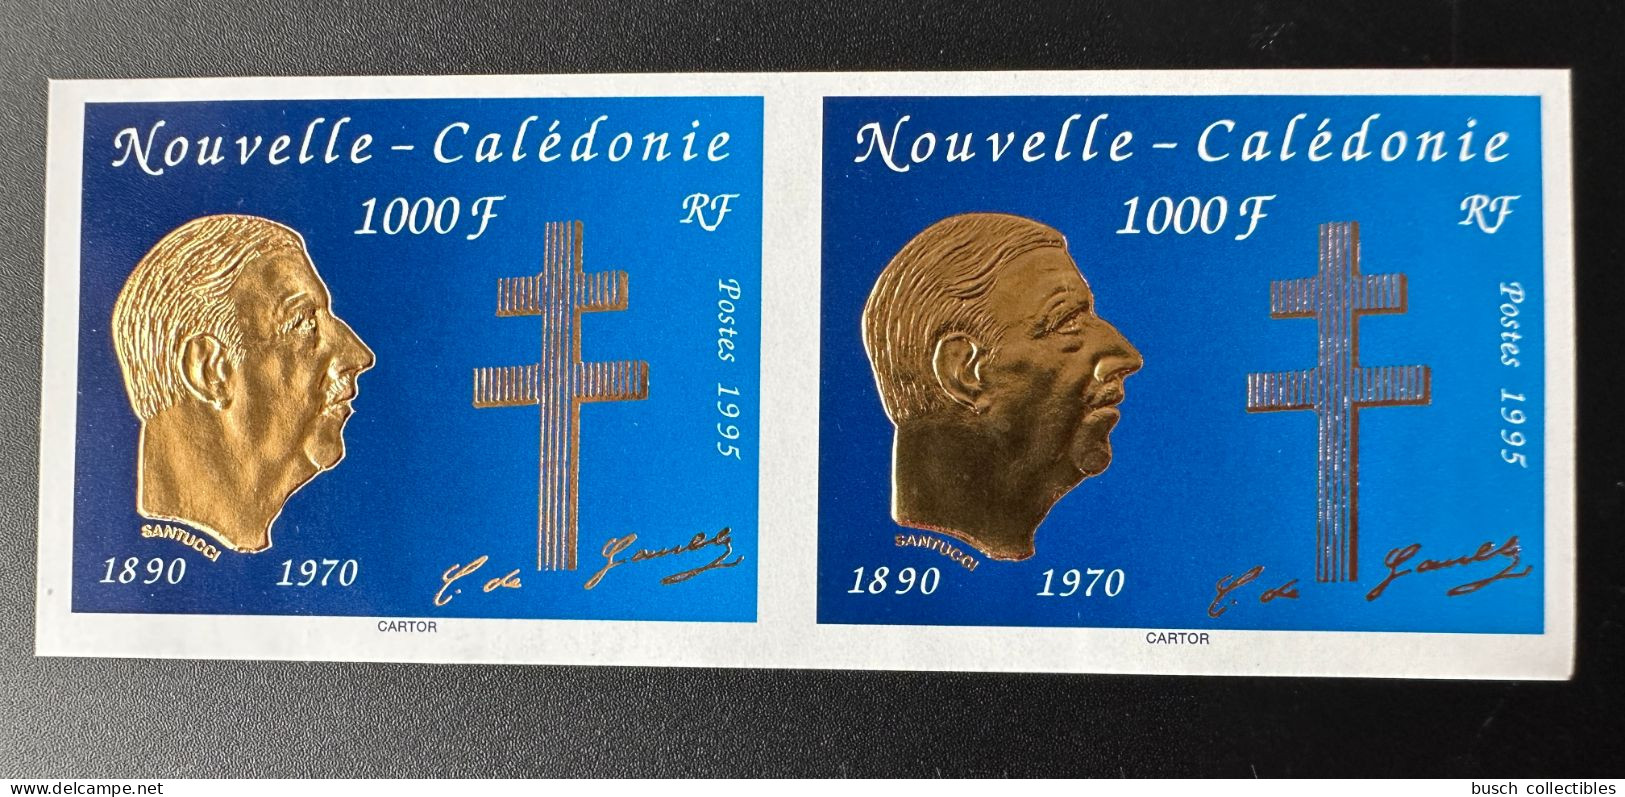 Nouvelle-Calédonie 1995 YT N°682 NON DENTELE Paire Horizontale Mort Du Général Charles De Gaulle Gold Doré - De Gaulle (Général)